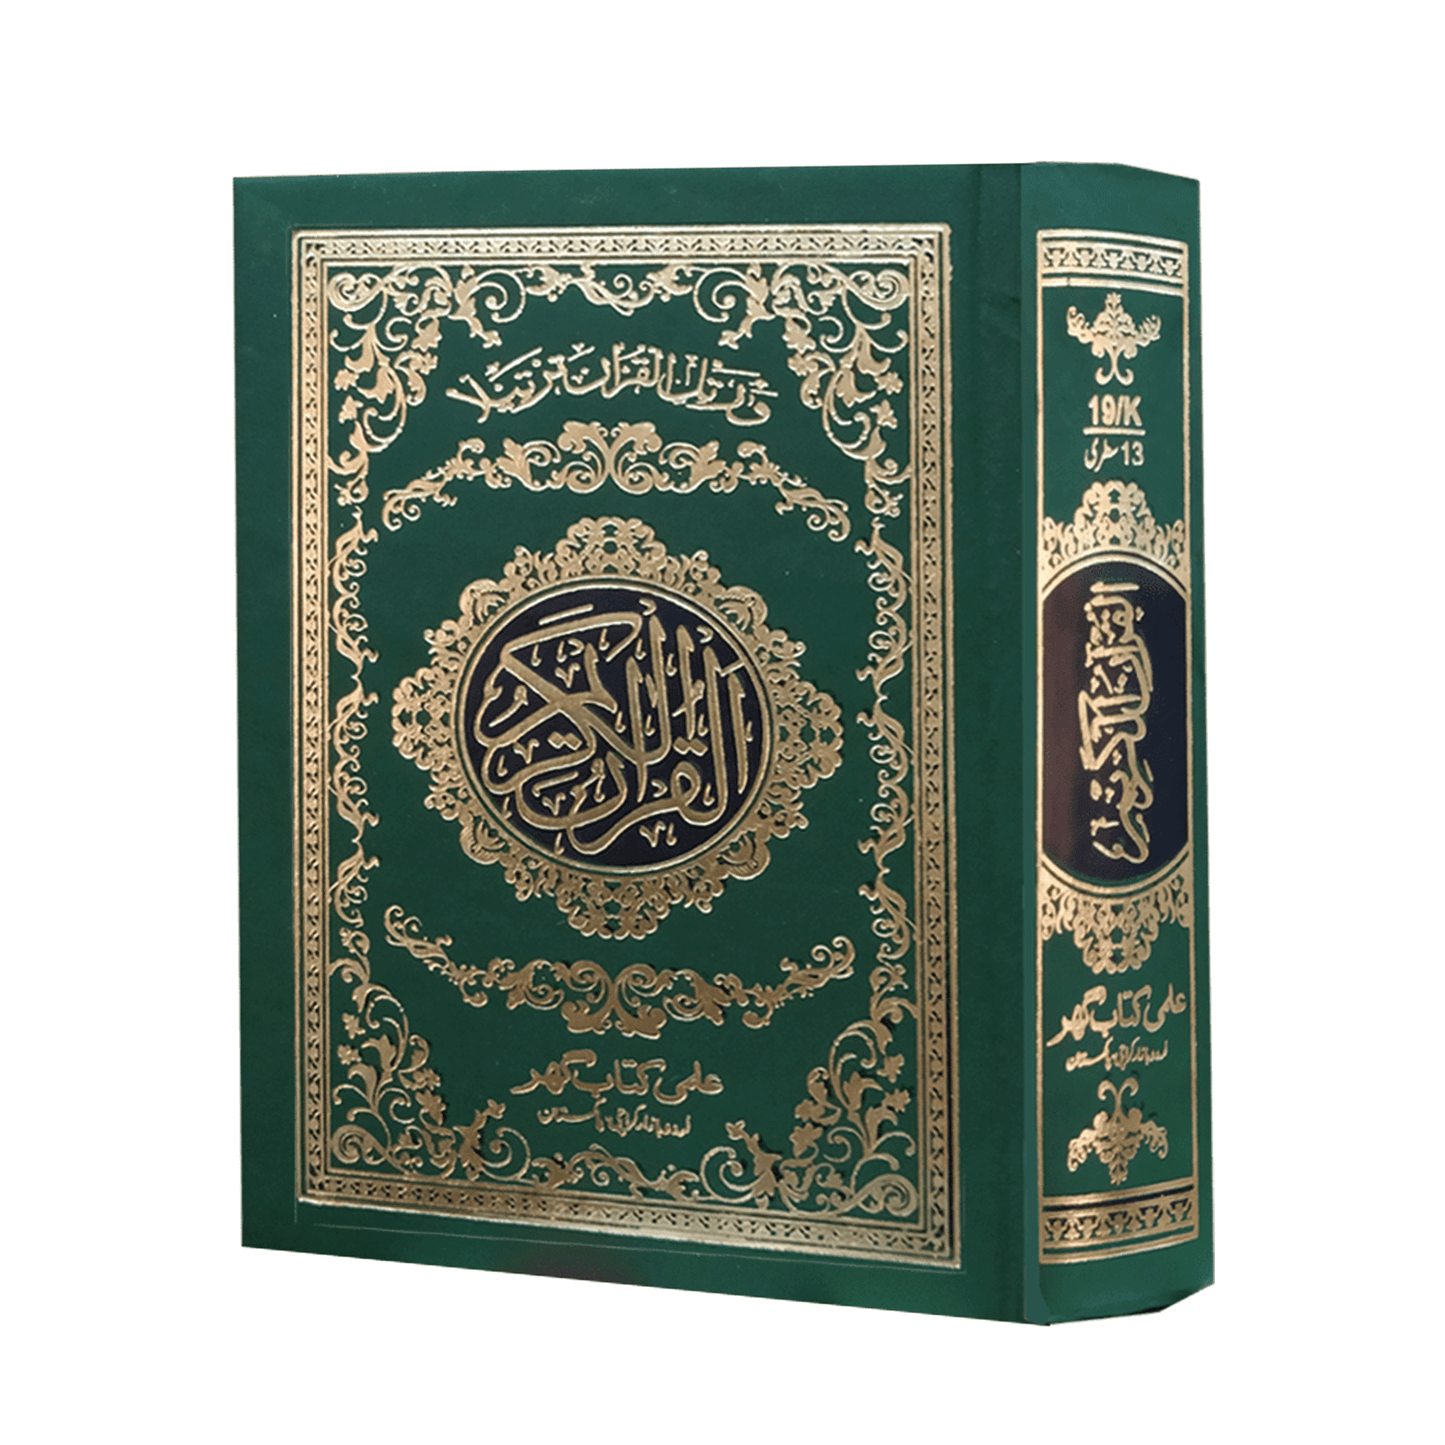 [19/K] Al-Quran-ul-Kareem in 13 Lines (Without Translation - Pocket Size)